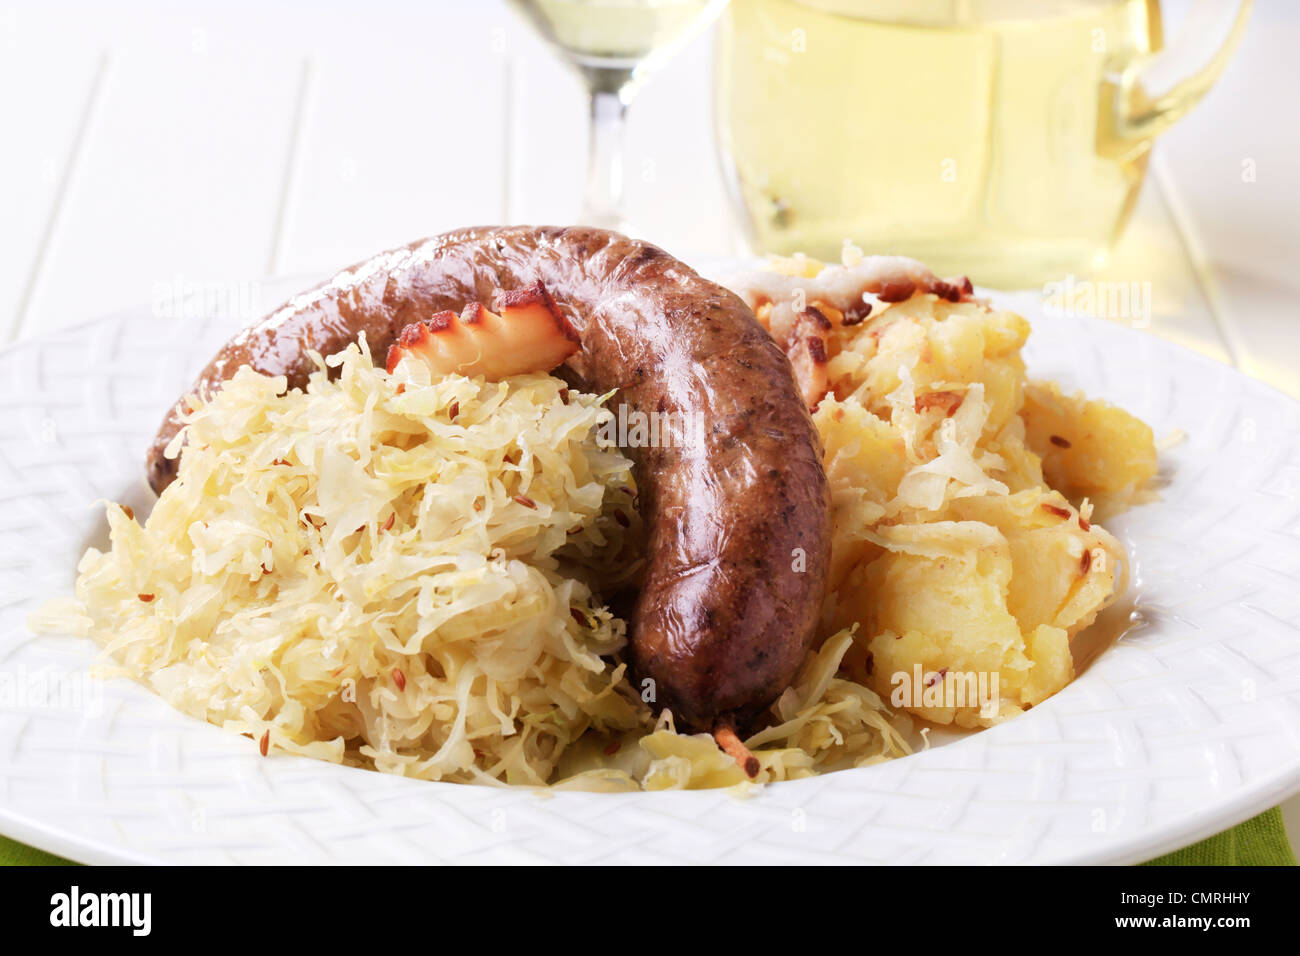 Blood sausage, sauerkraut and potatoes - closeup Stock Photo